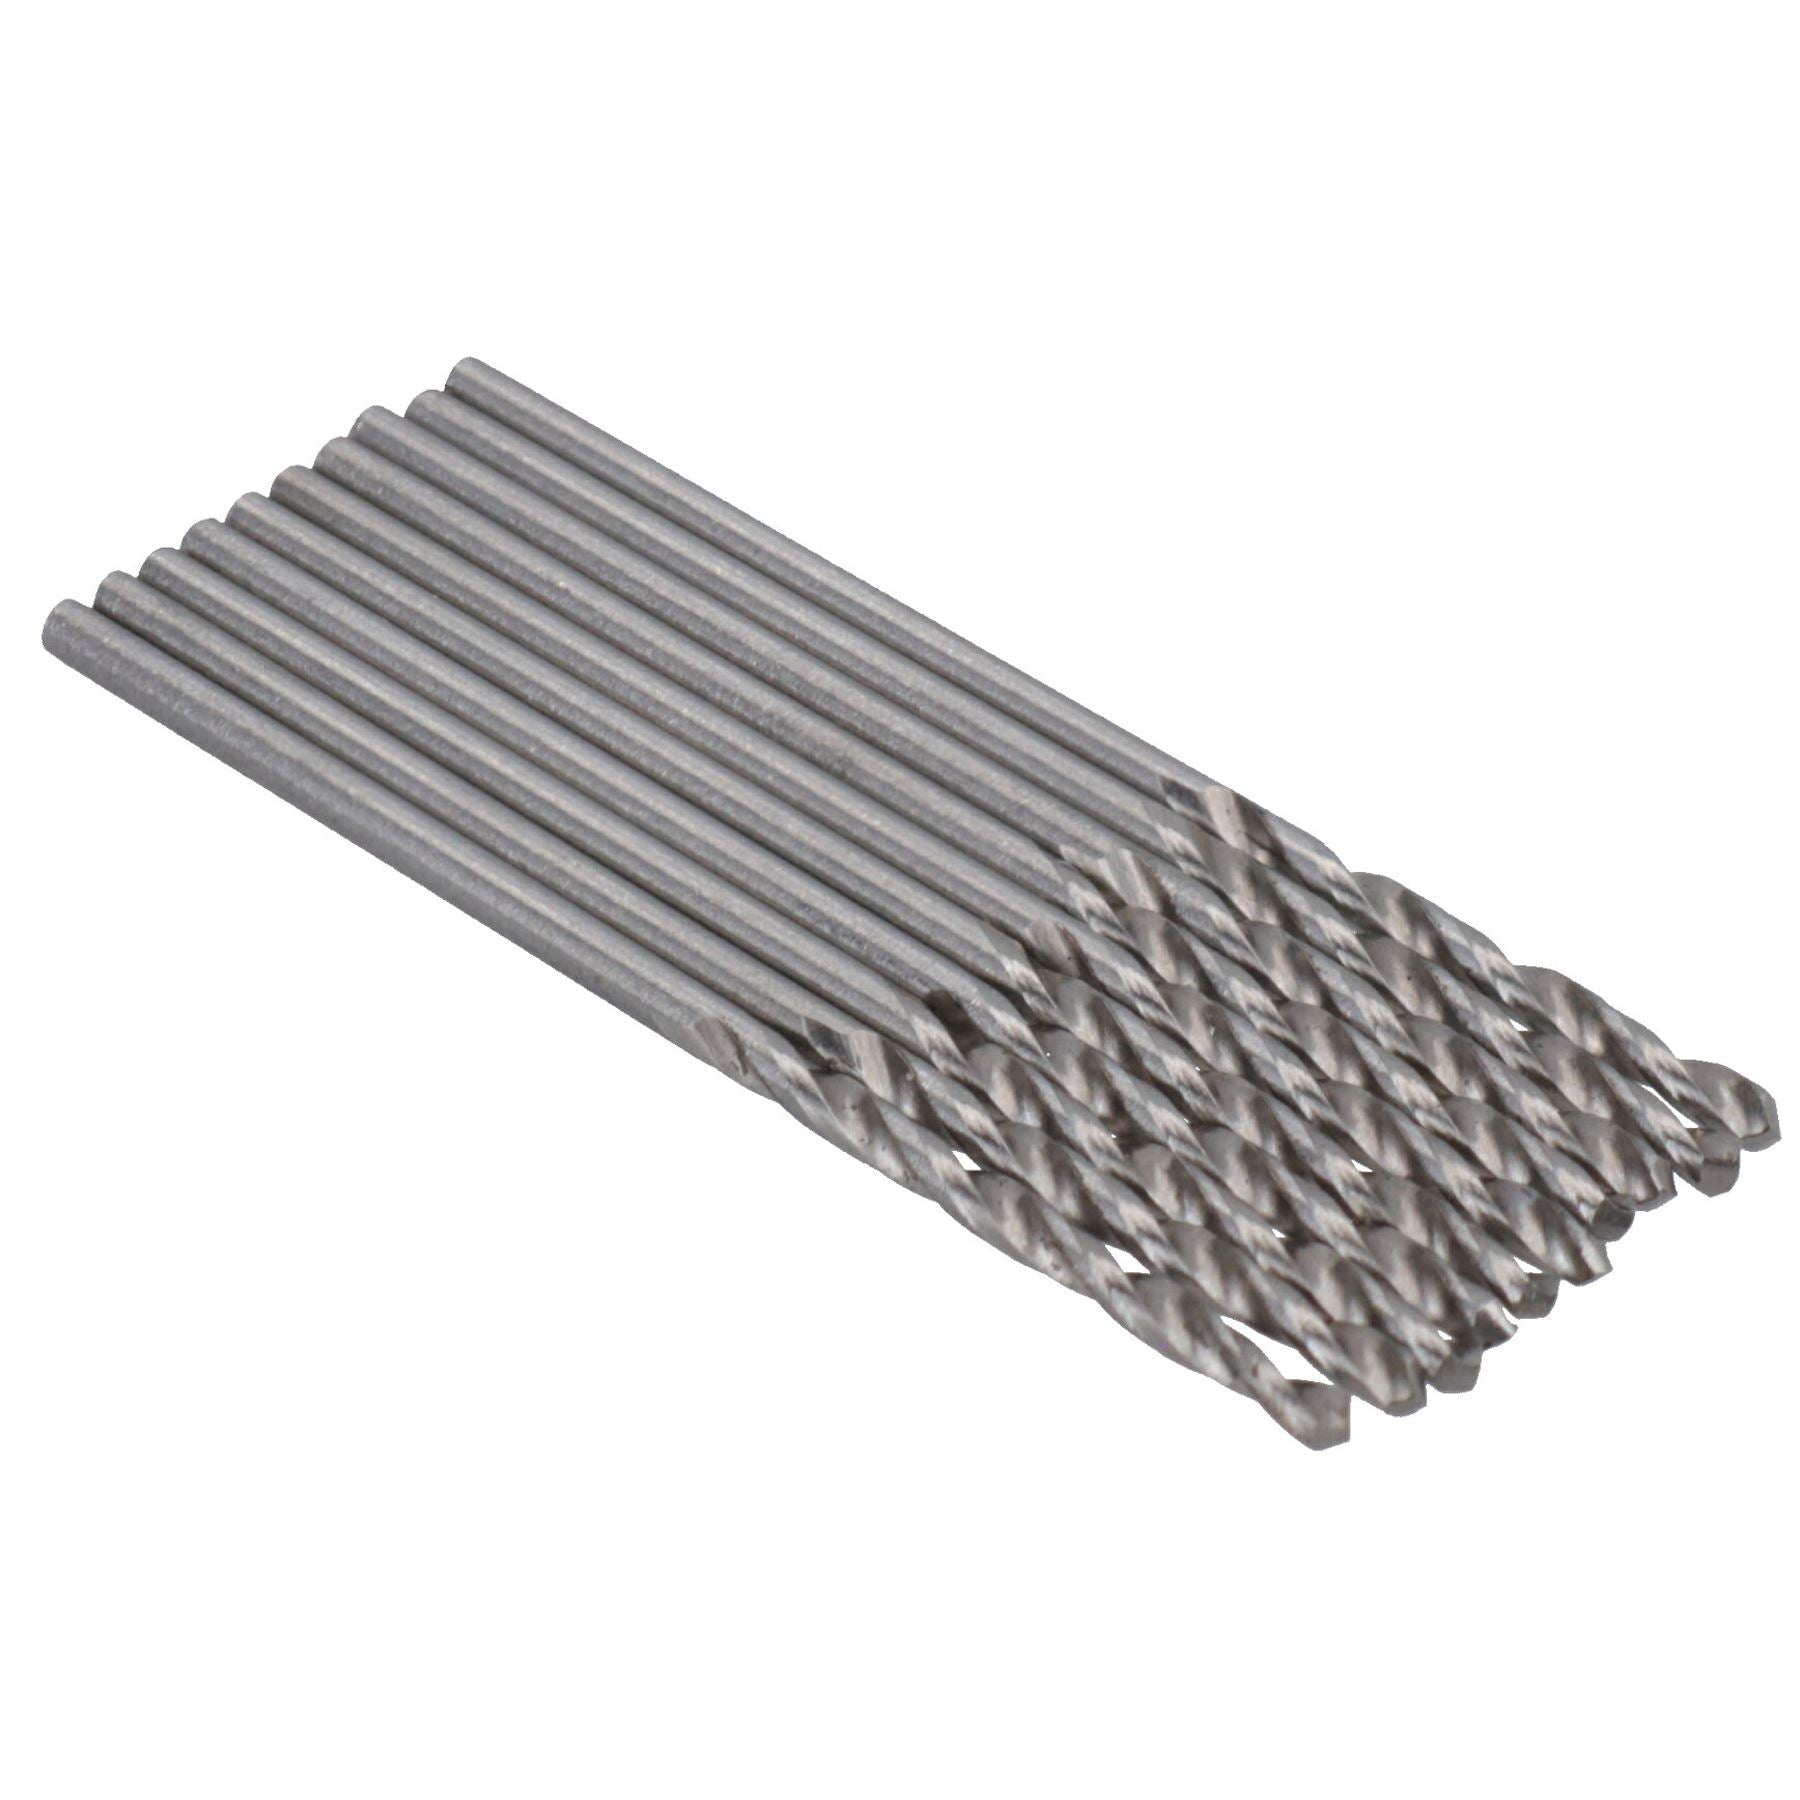 HSS-G Metric MM Drill Bits for Drilling Metal Iron Wood Plastics 1mm – 12.5mm